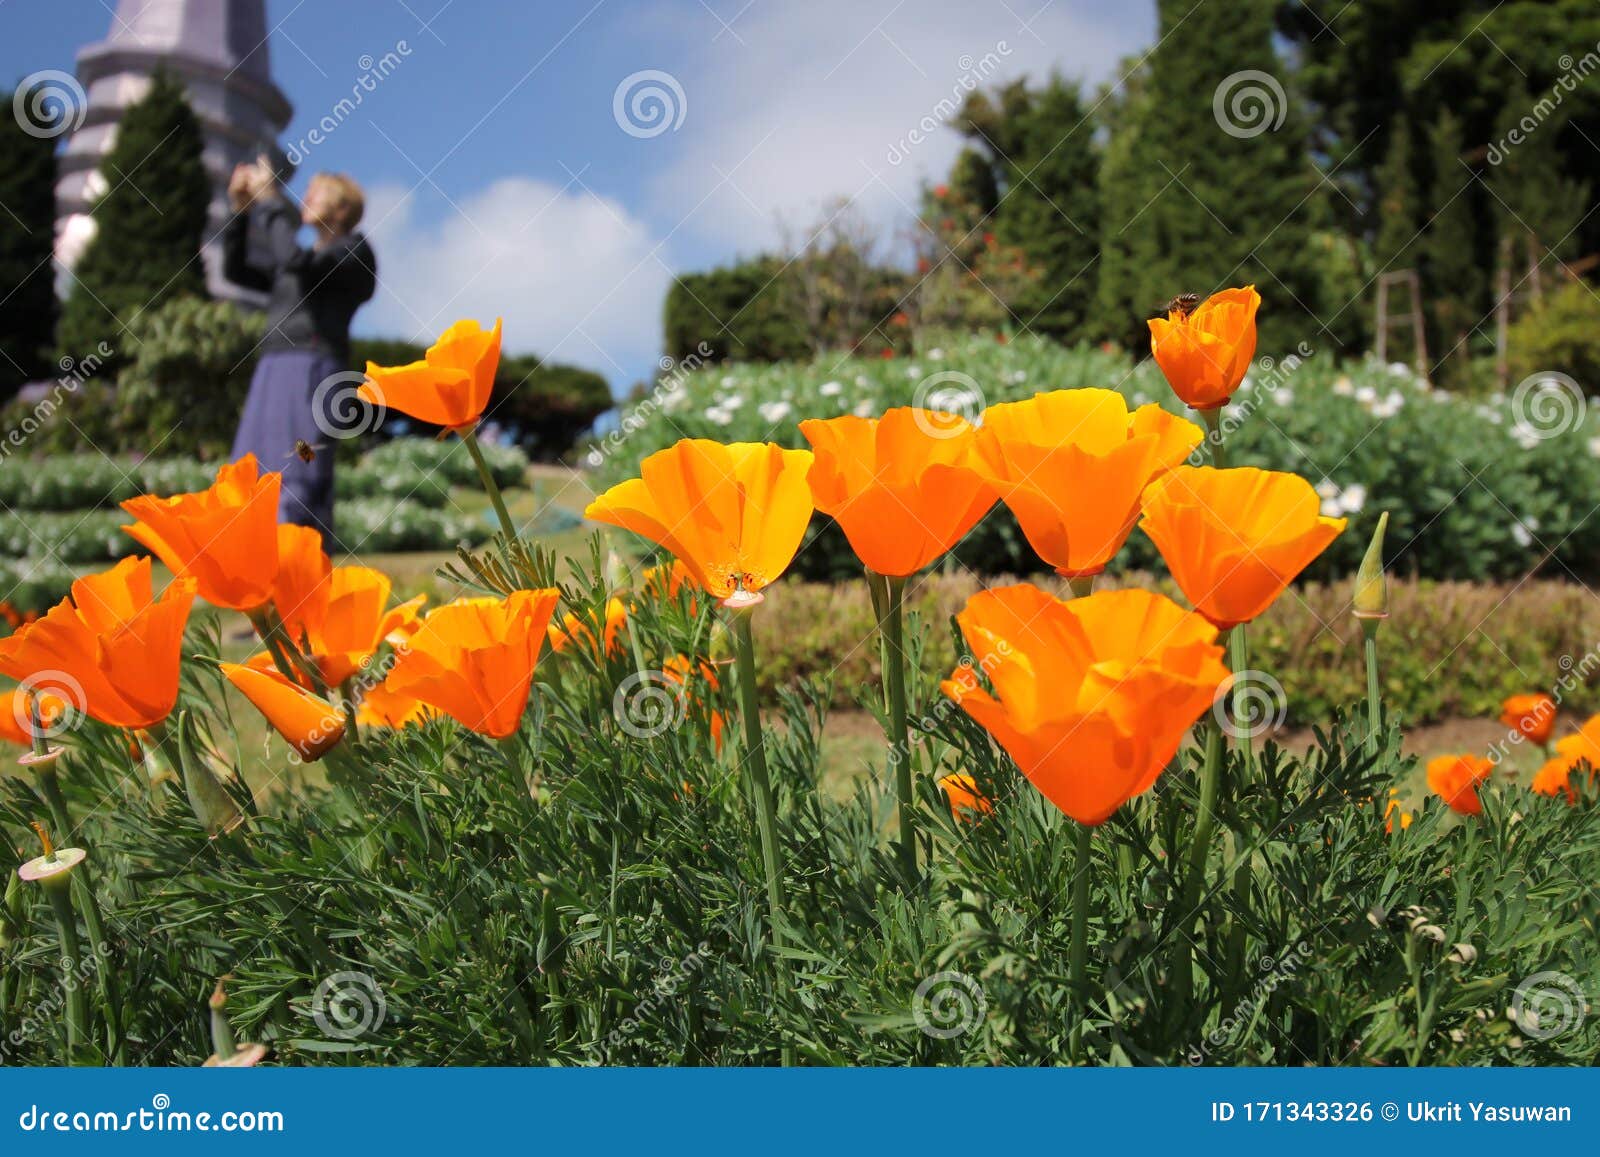 orange flower blossom in a garden